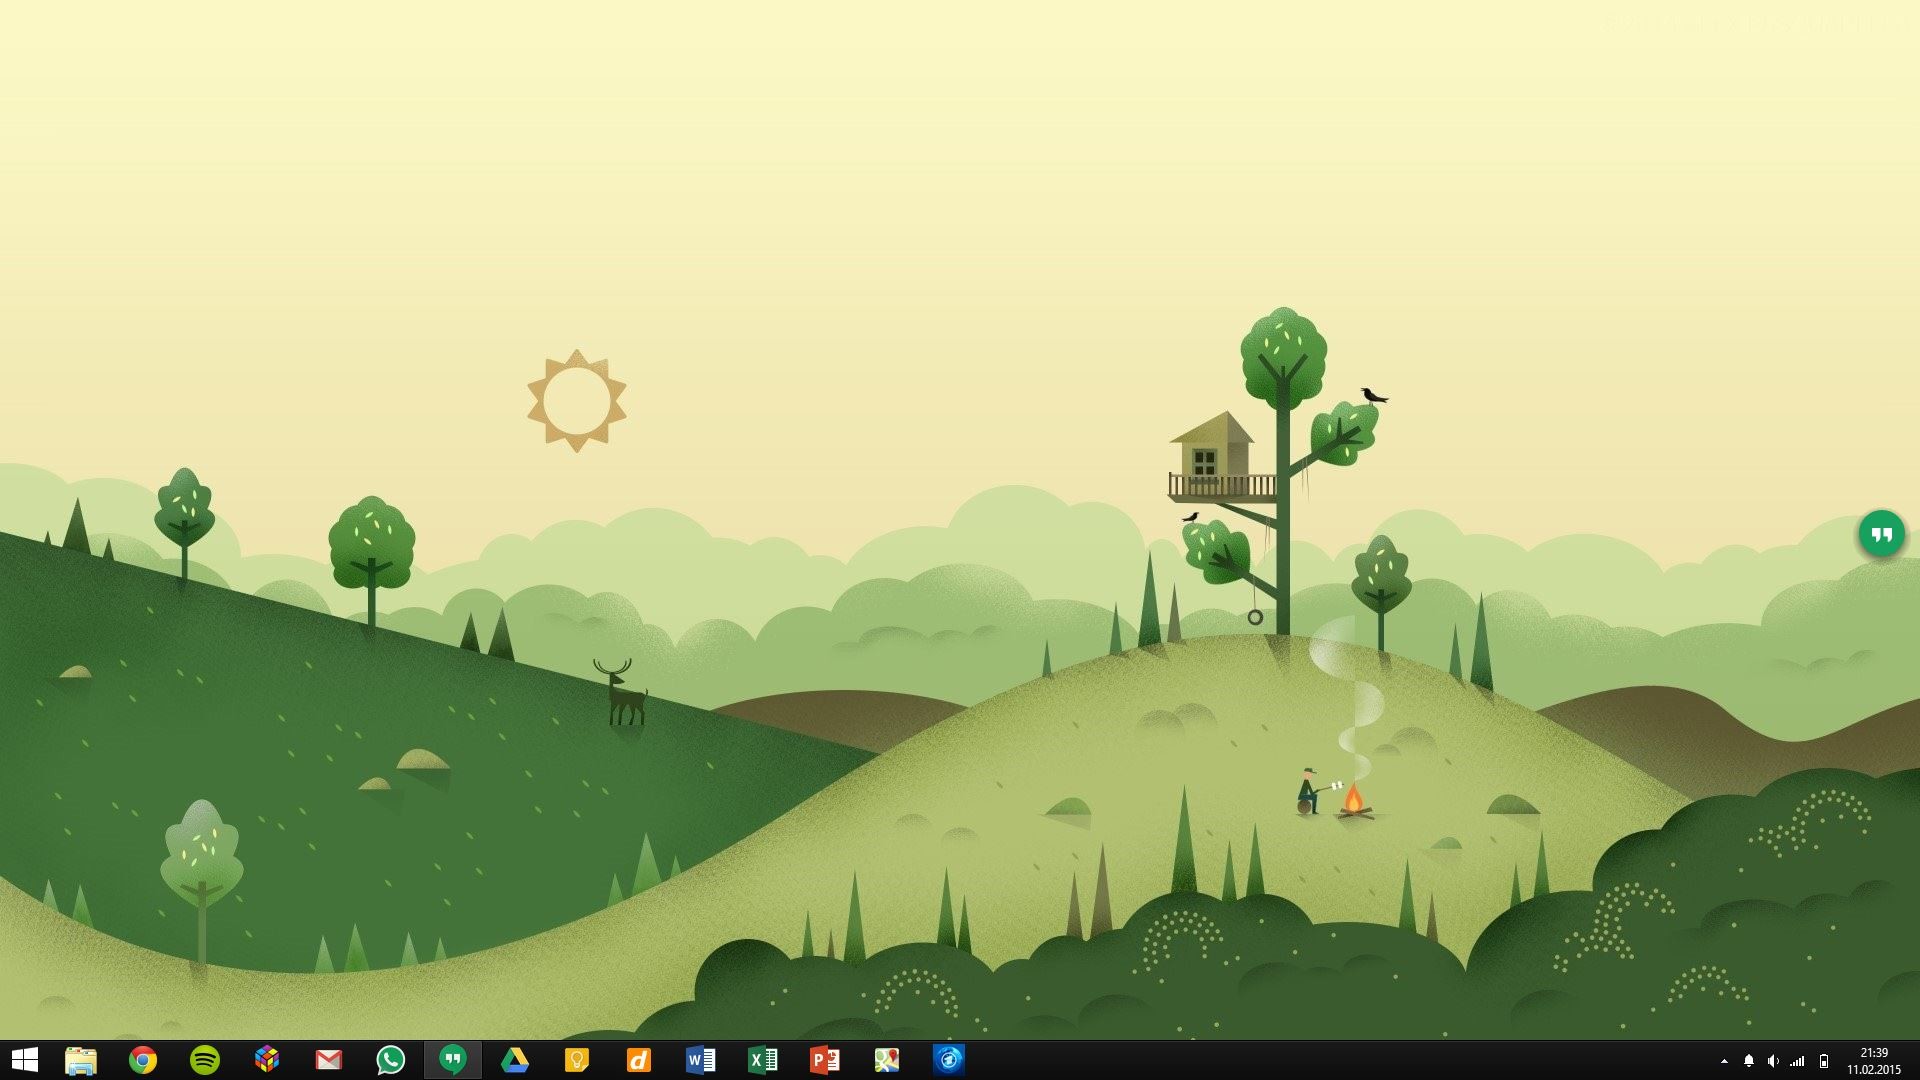 1920x1080 Simple desktop with Google Now inspired wallpaper : desktops